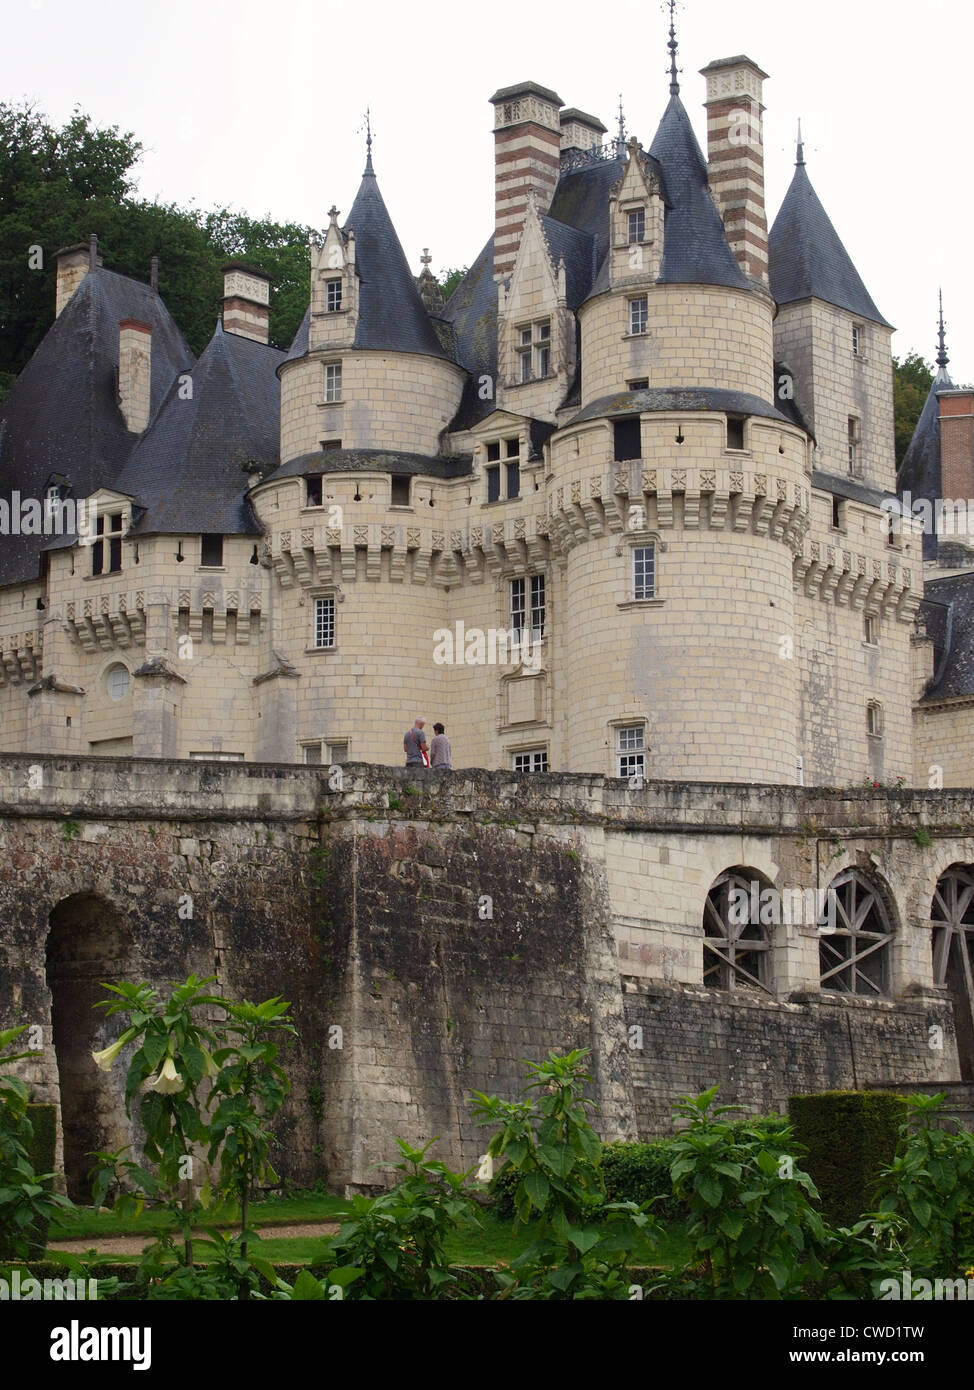 Chateau de Ussé, Loire valley, France Stock Photo